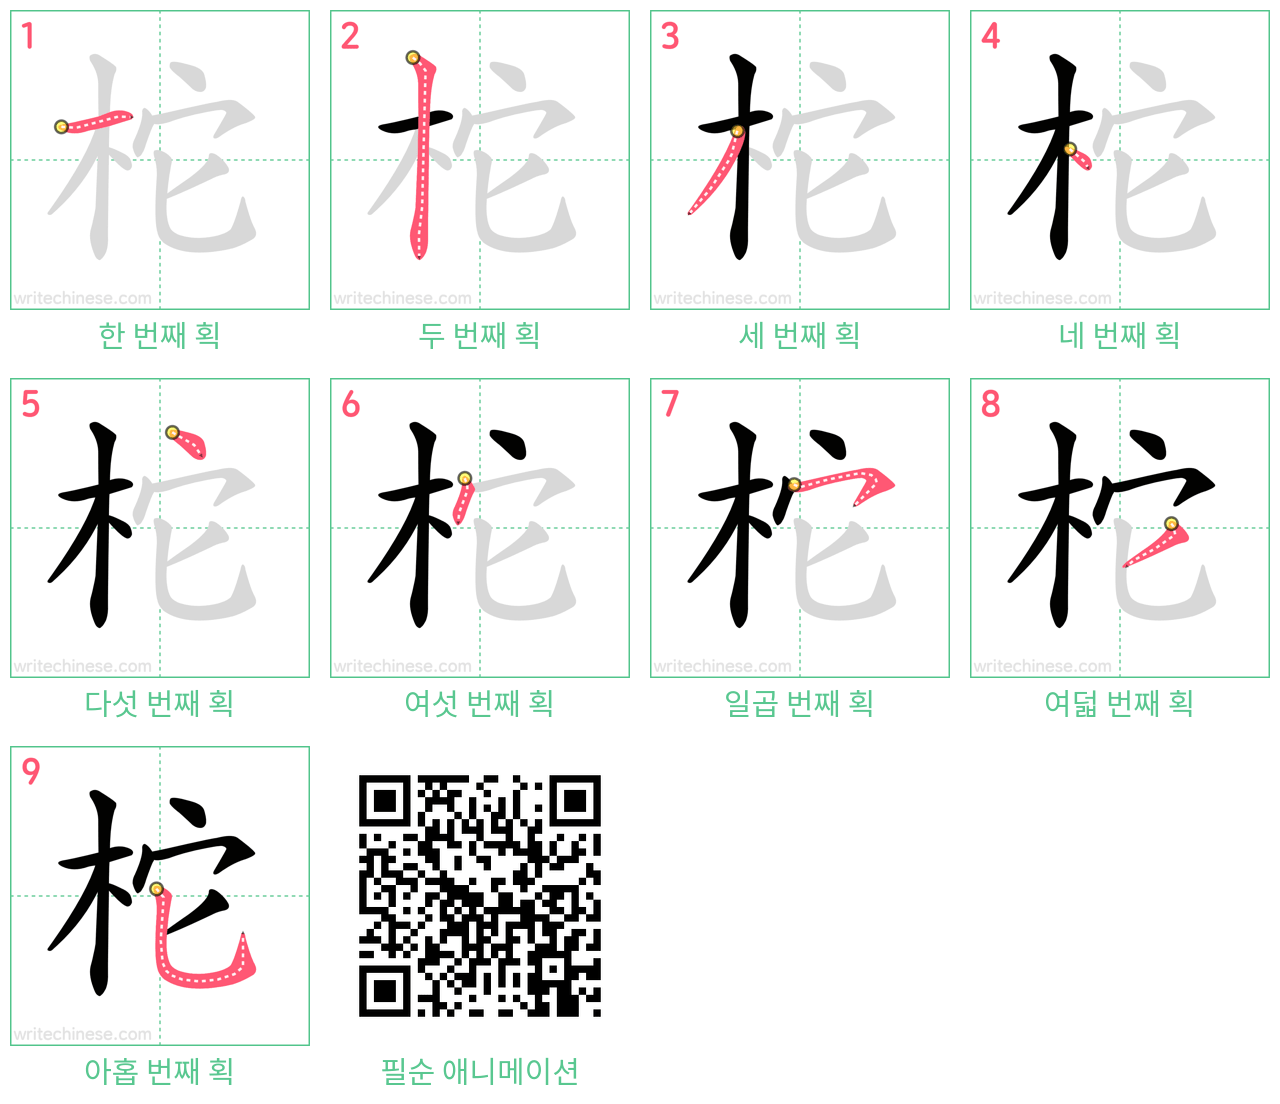 柁 step-by-step stroke order diagrams